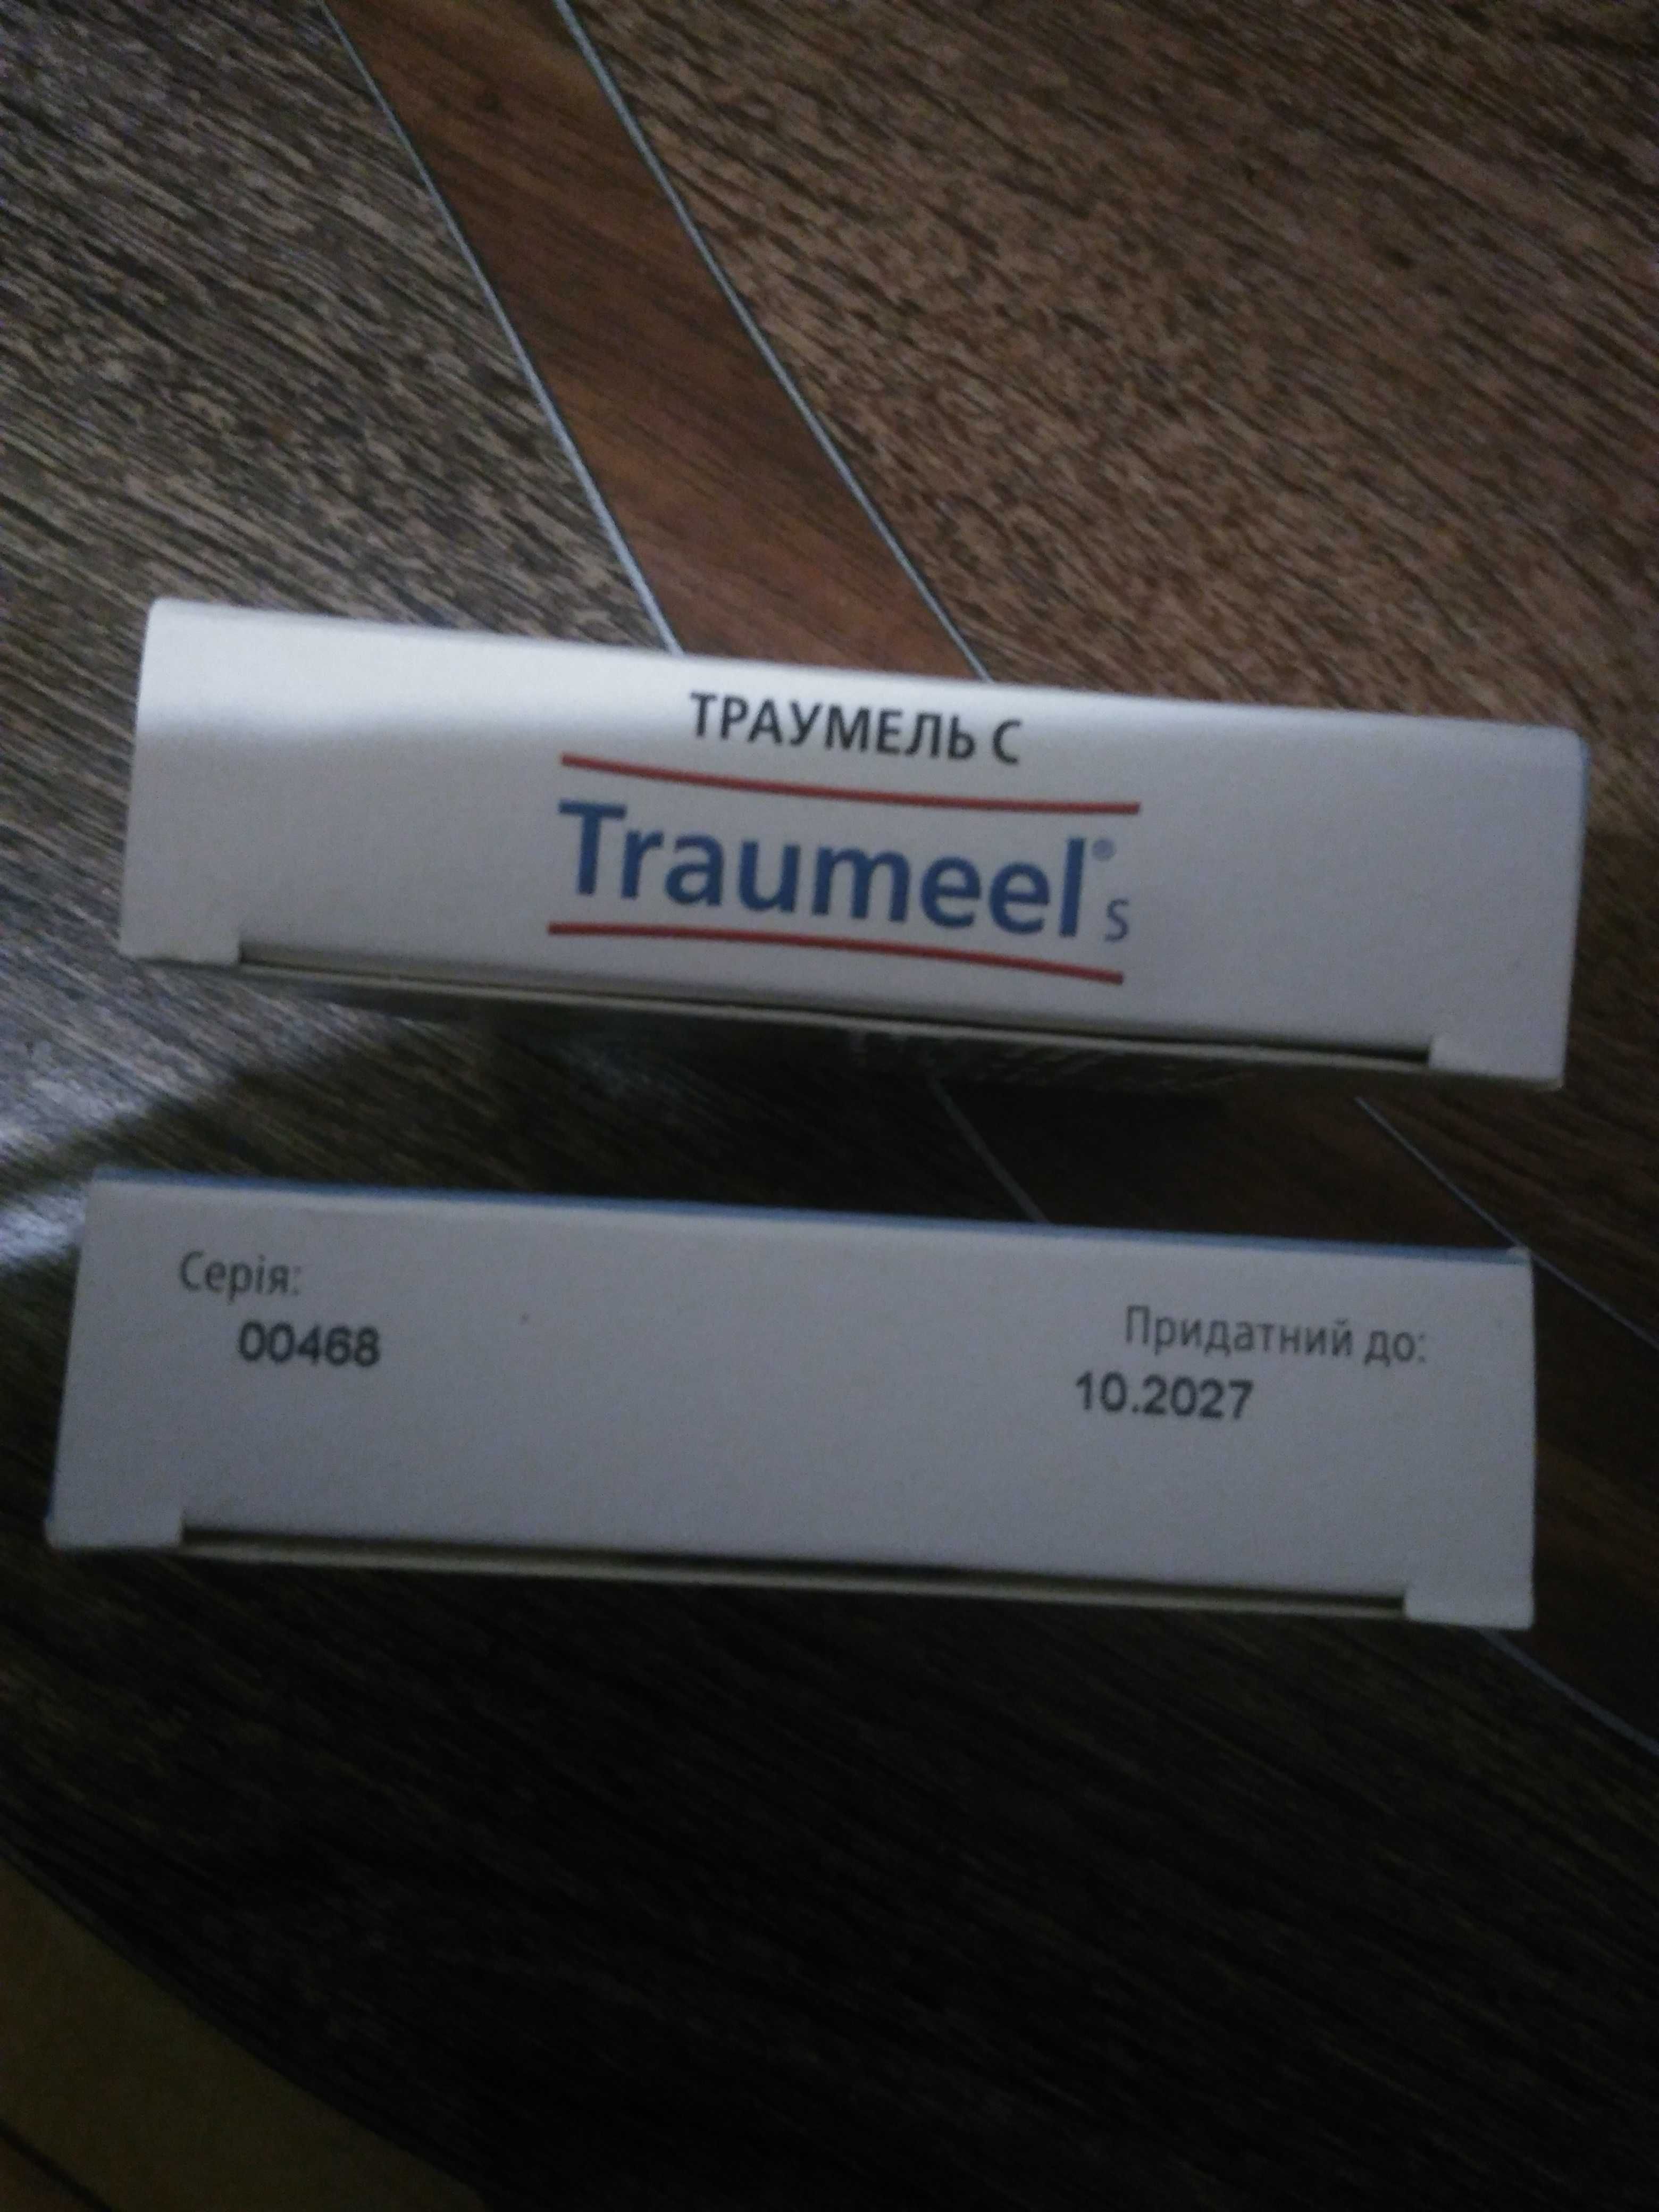 Traumeel S упаковка